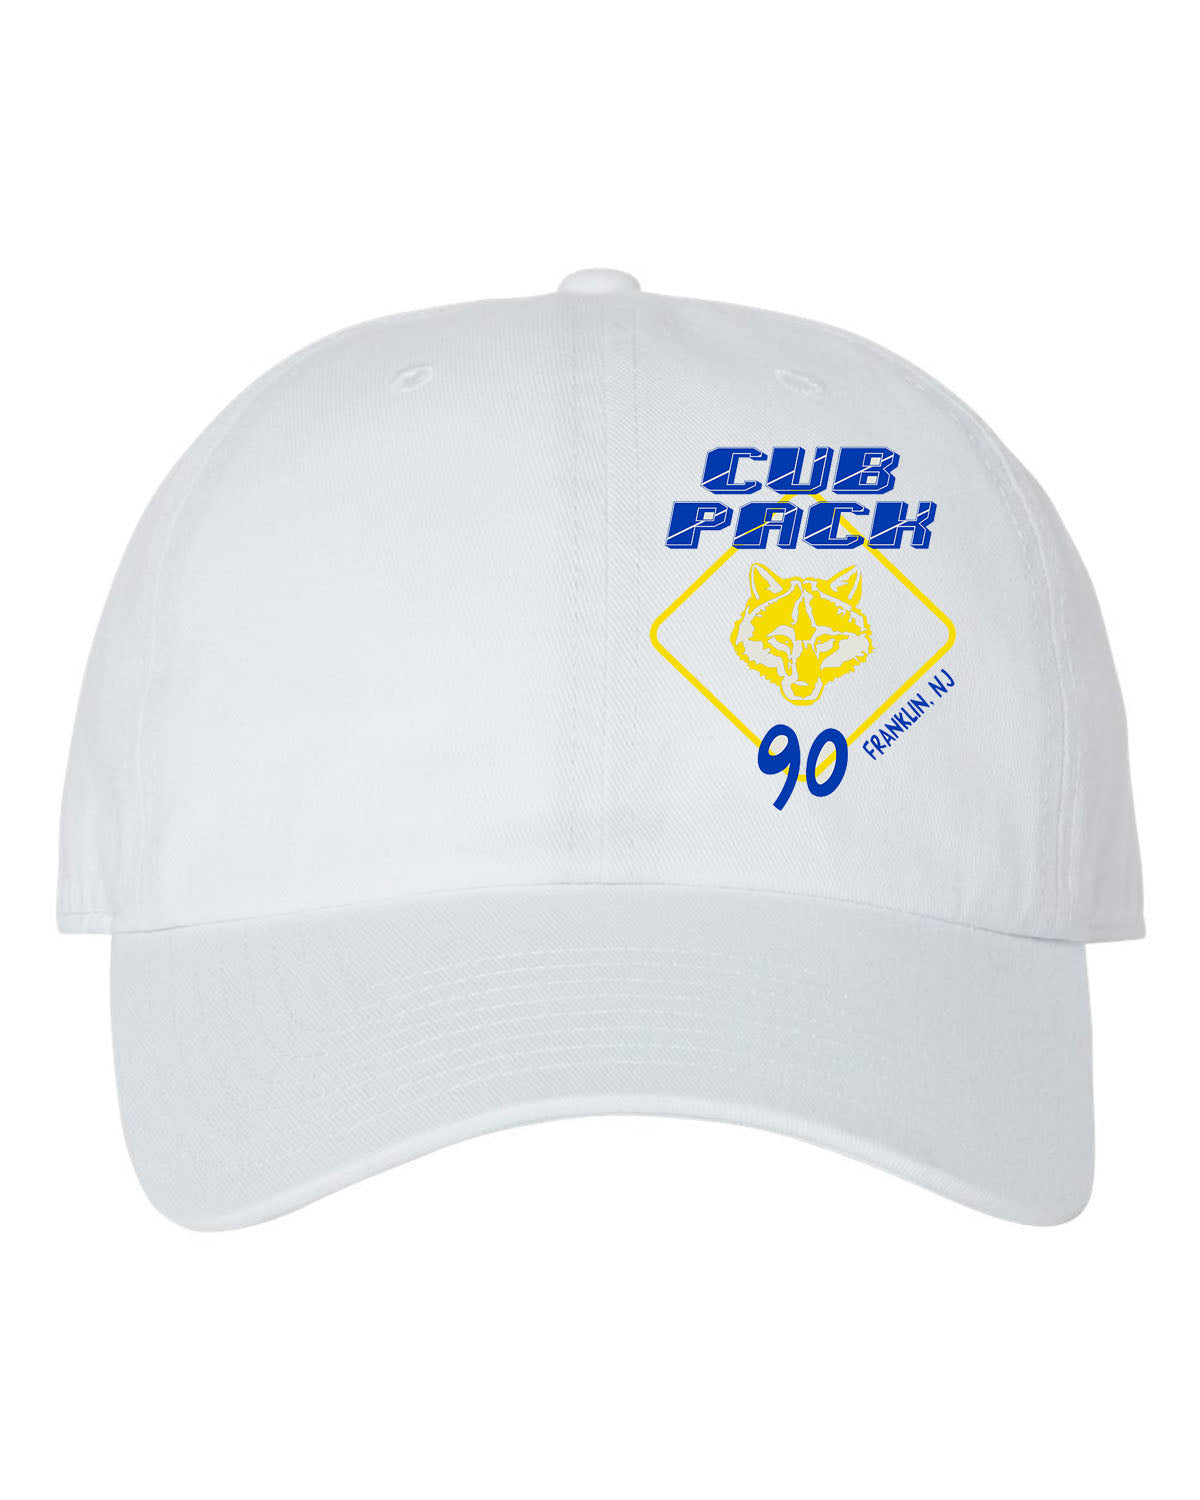 Cub Scout Pack 90 Design 2 Trucker Hat